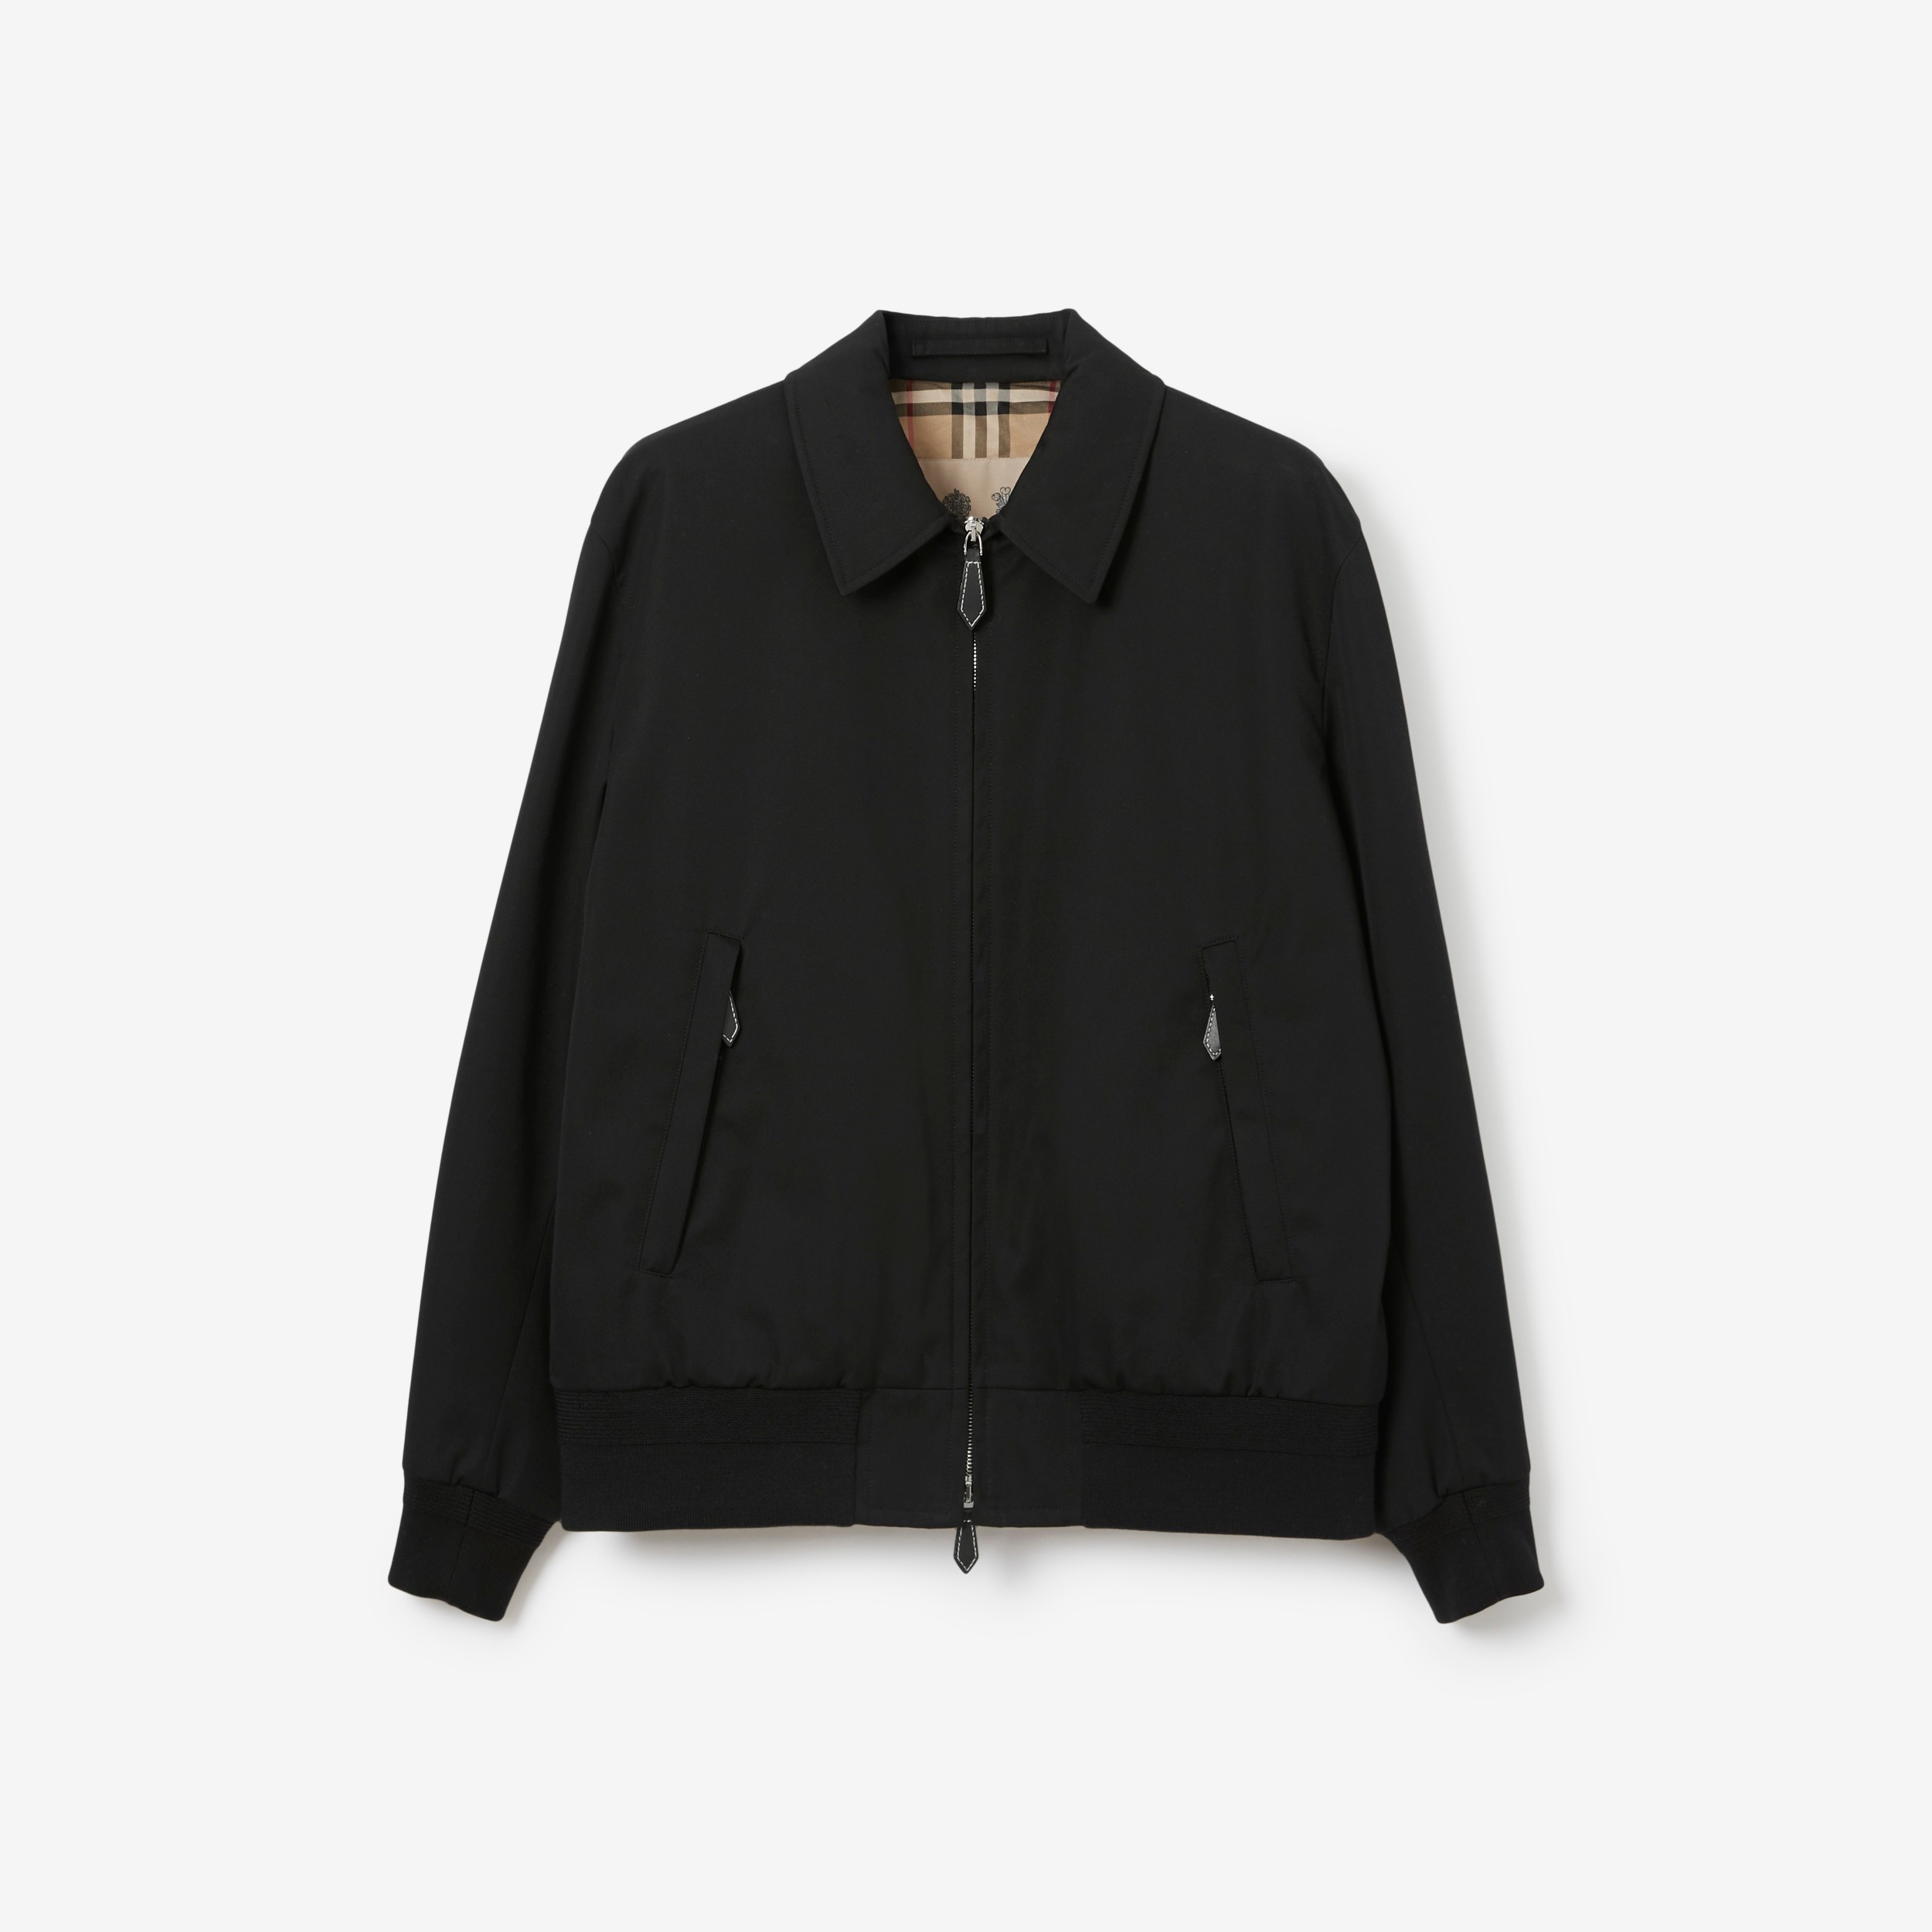 Actualizar 30+ imagen burberry mens jacket black